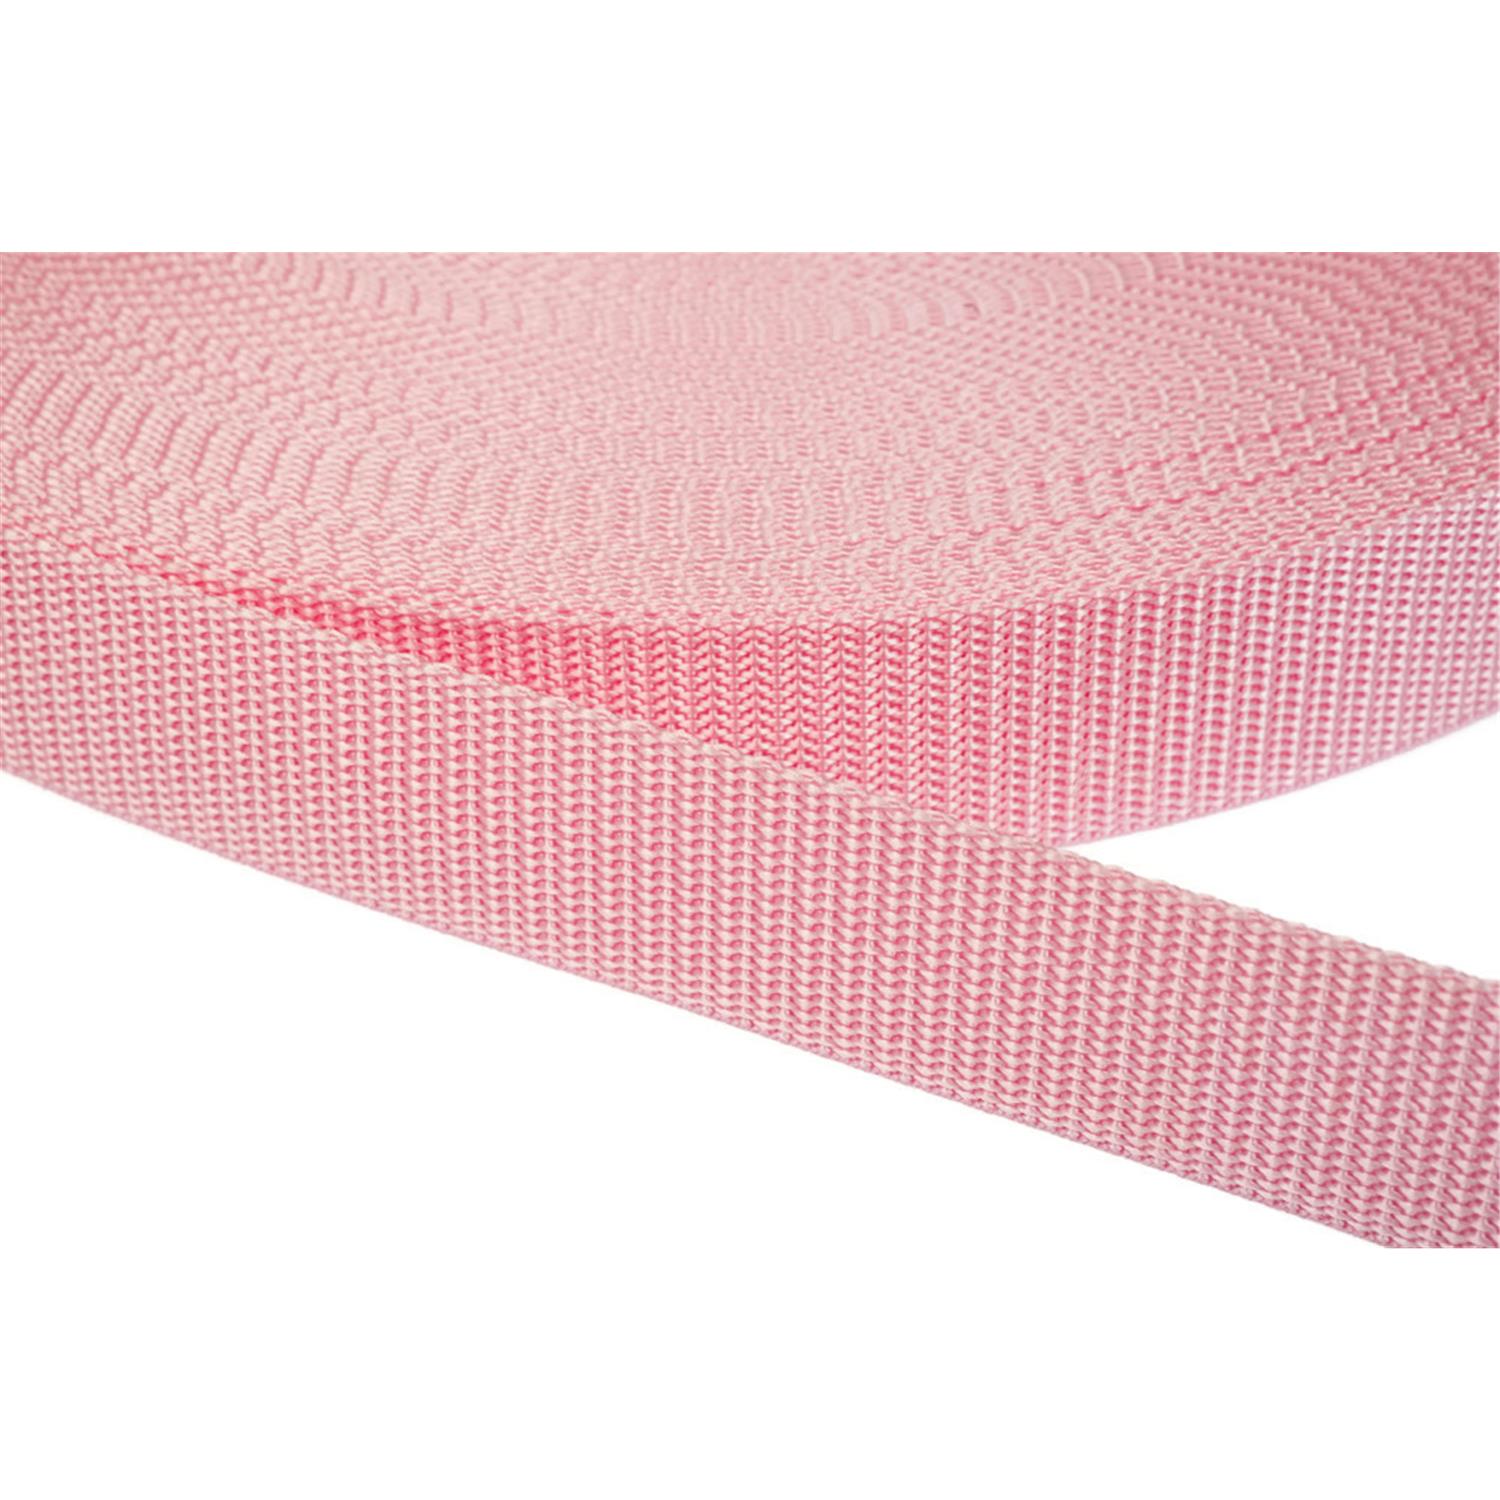 Gurtband 15mm breit aus Polypropylen in 41 Farben 12 - rosa 12 Meter